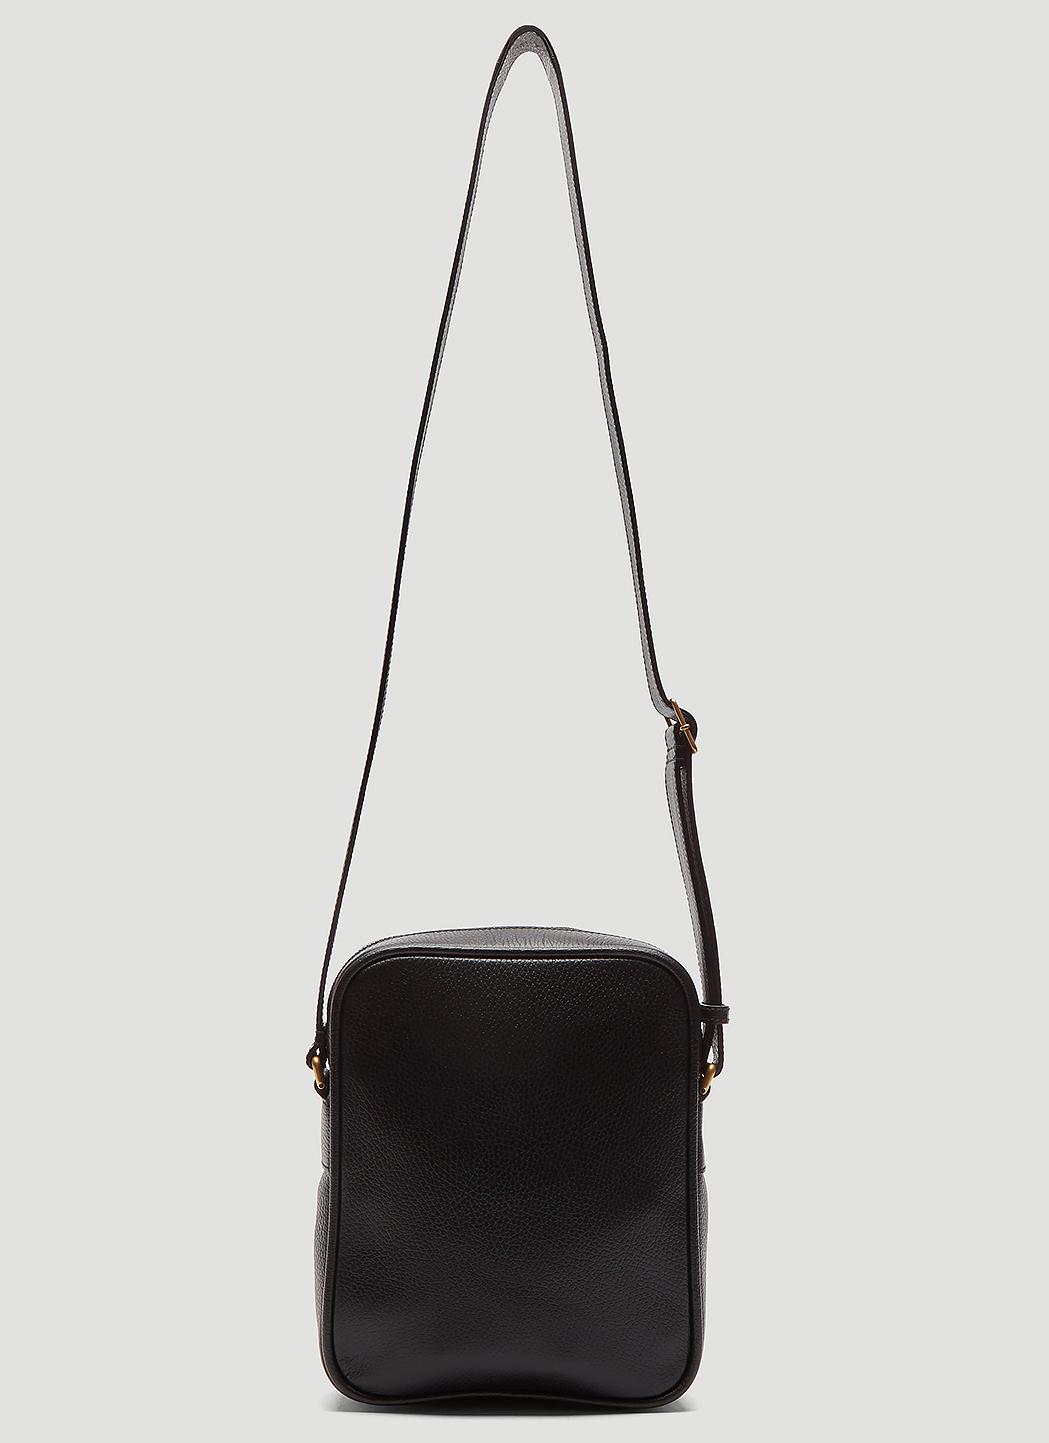 Gucci Print Messenger Bag In Black in Black for Men - Lyst